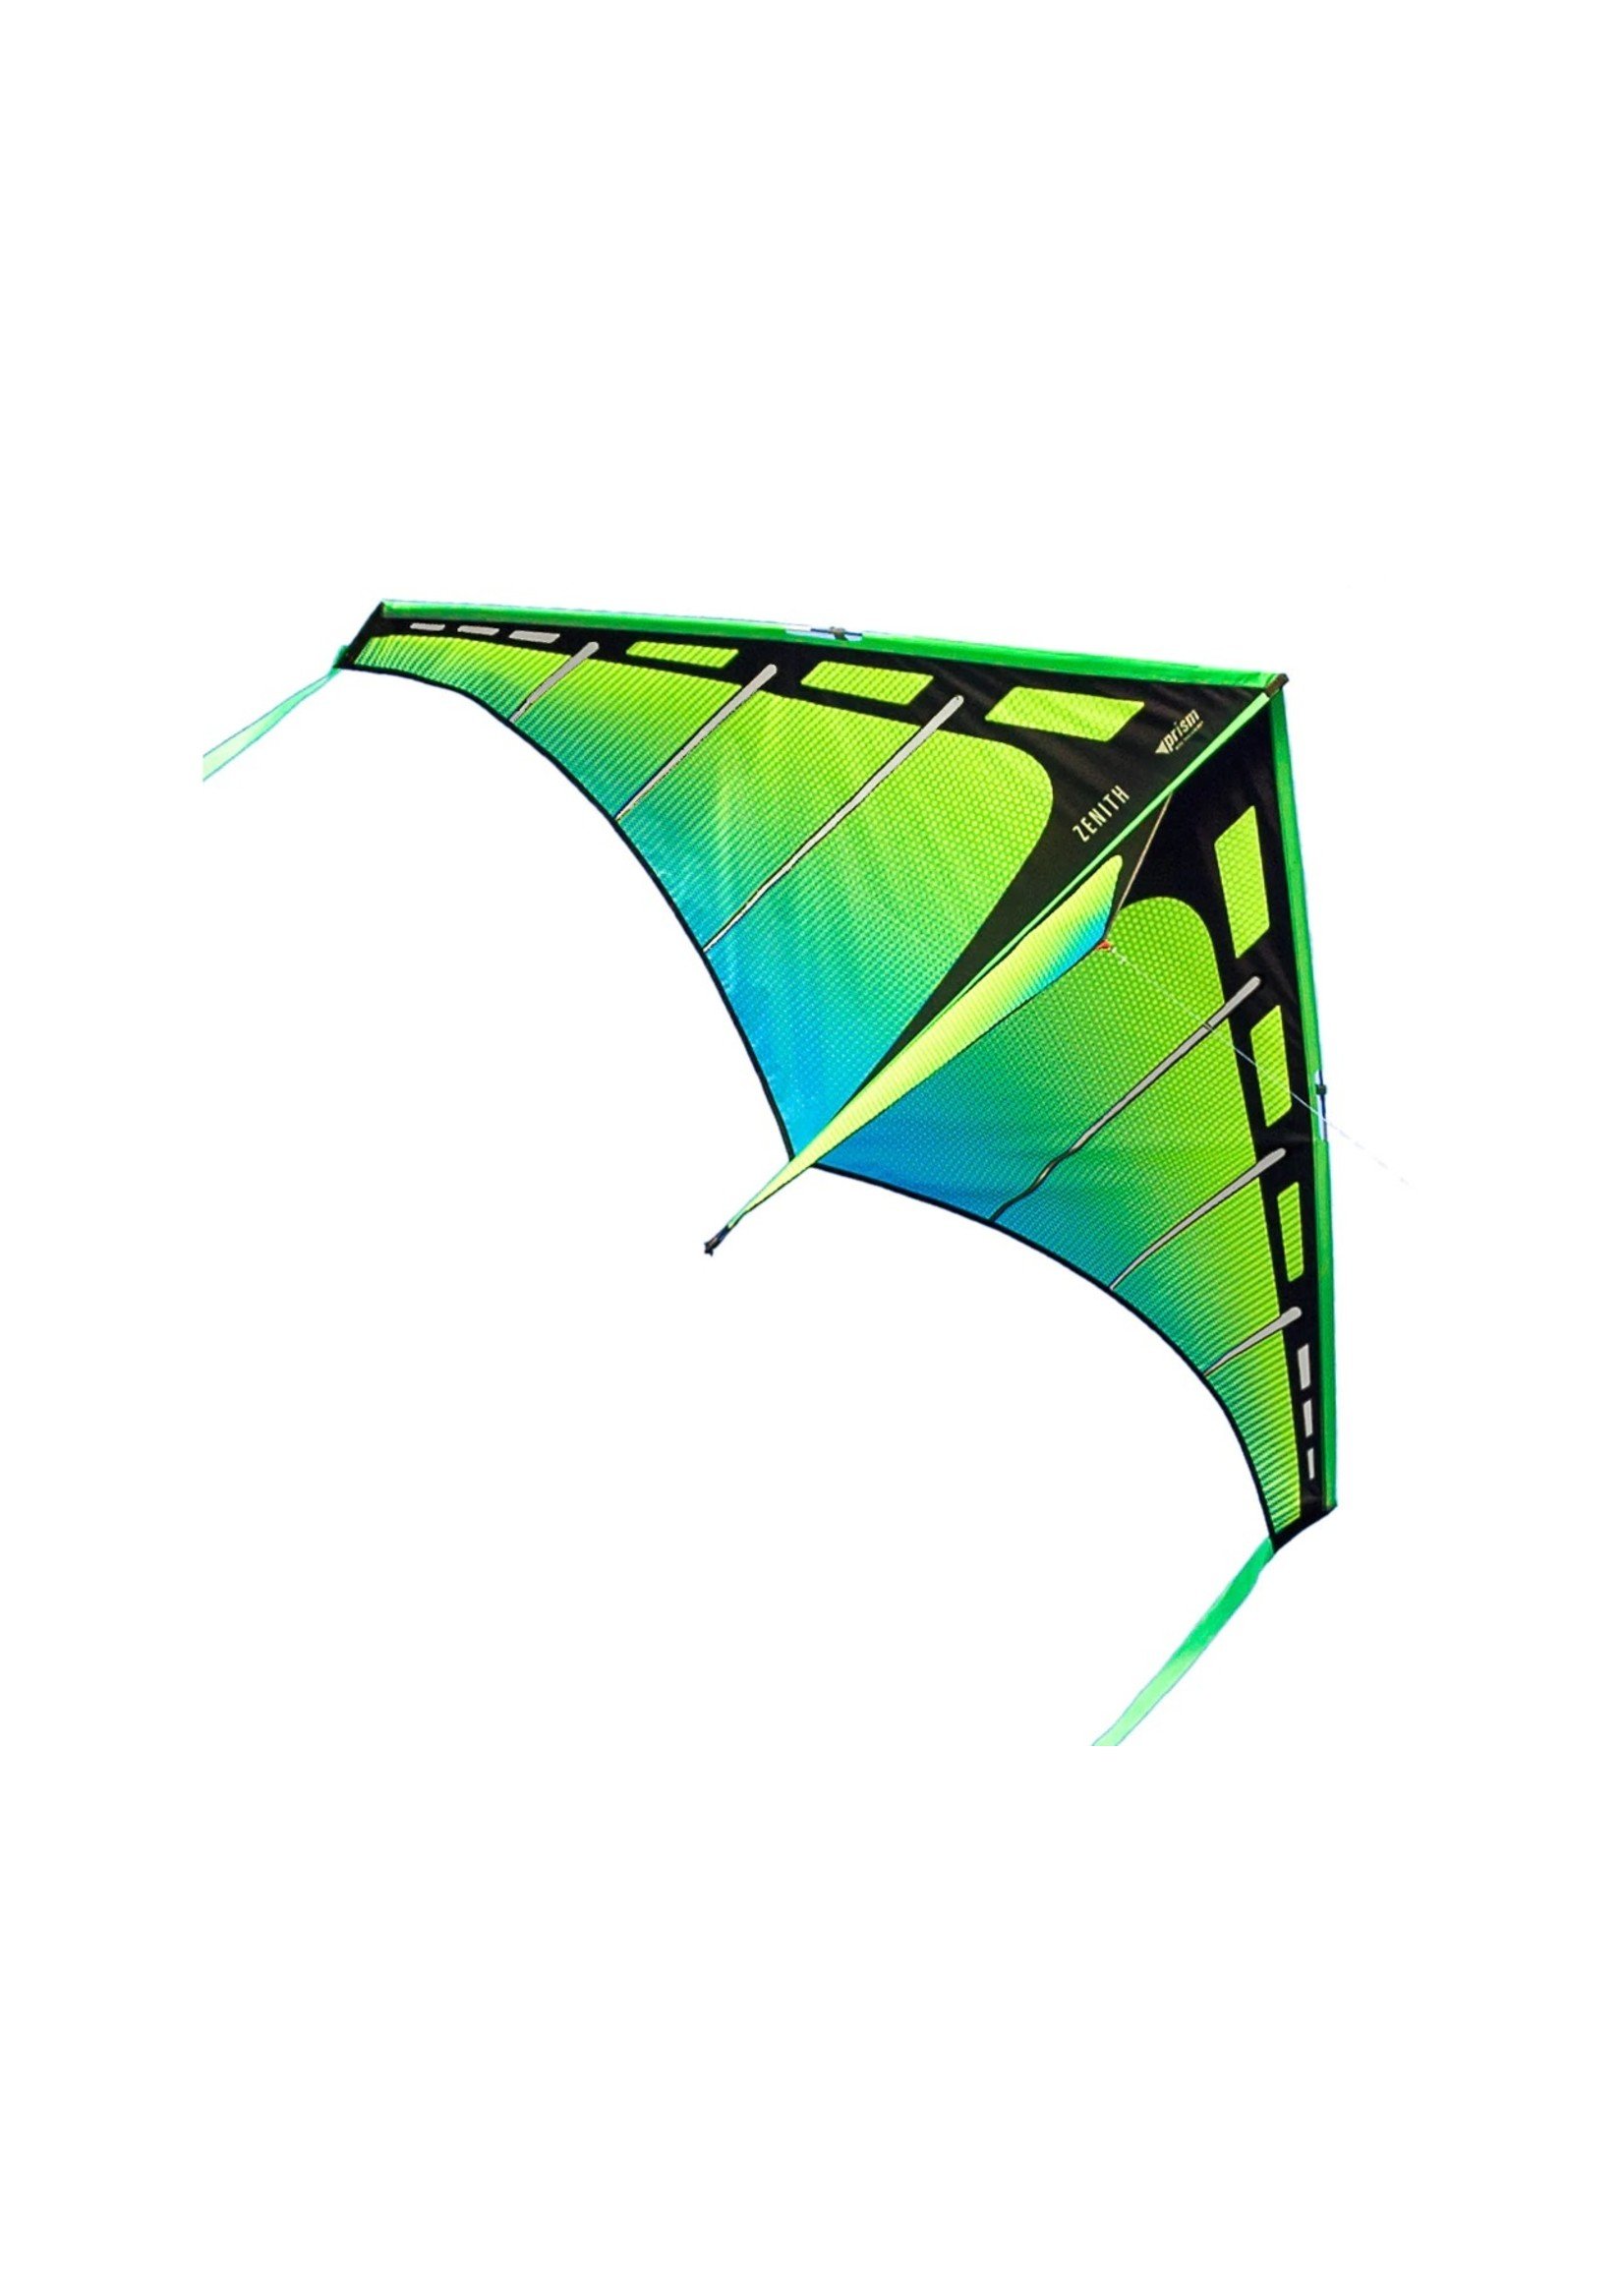 Prism Zenith 5 Aurora - Single Line Kite